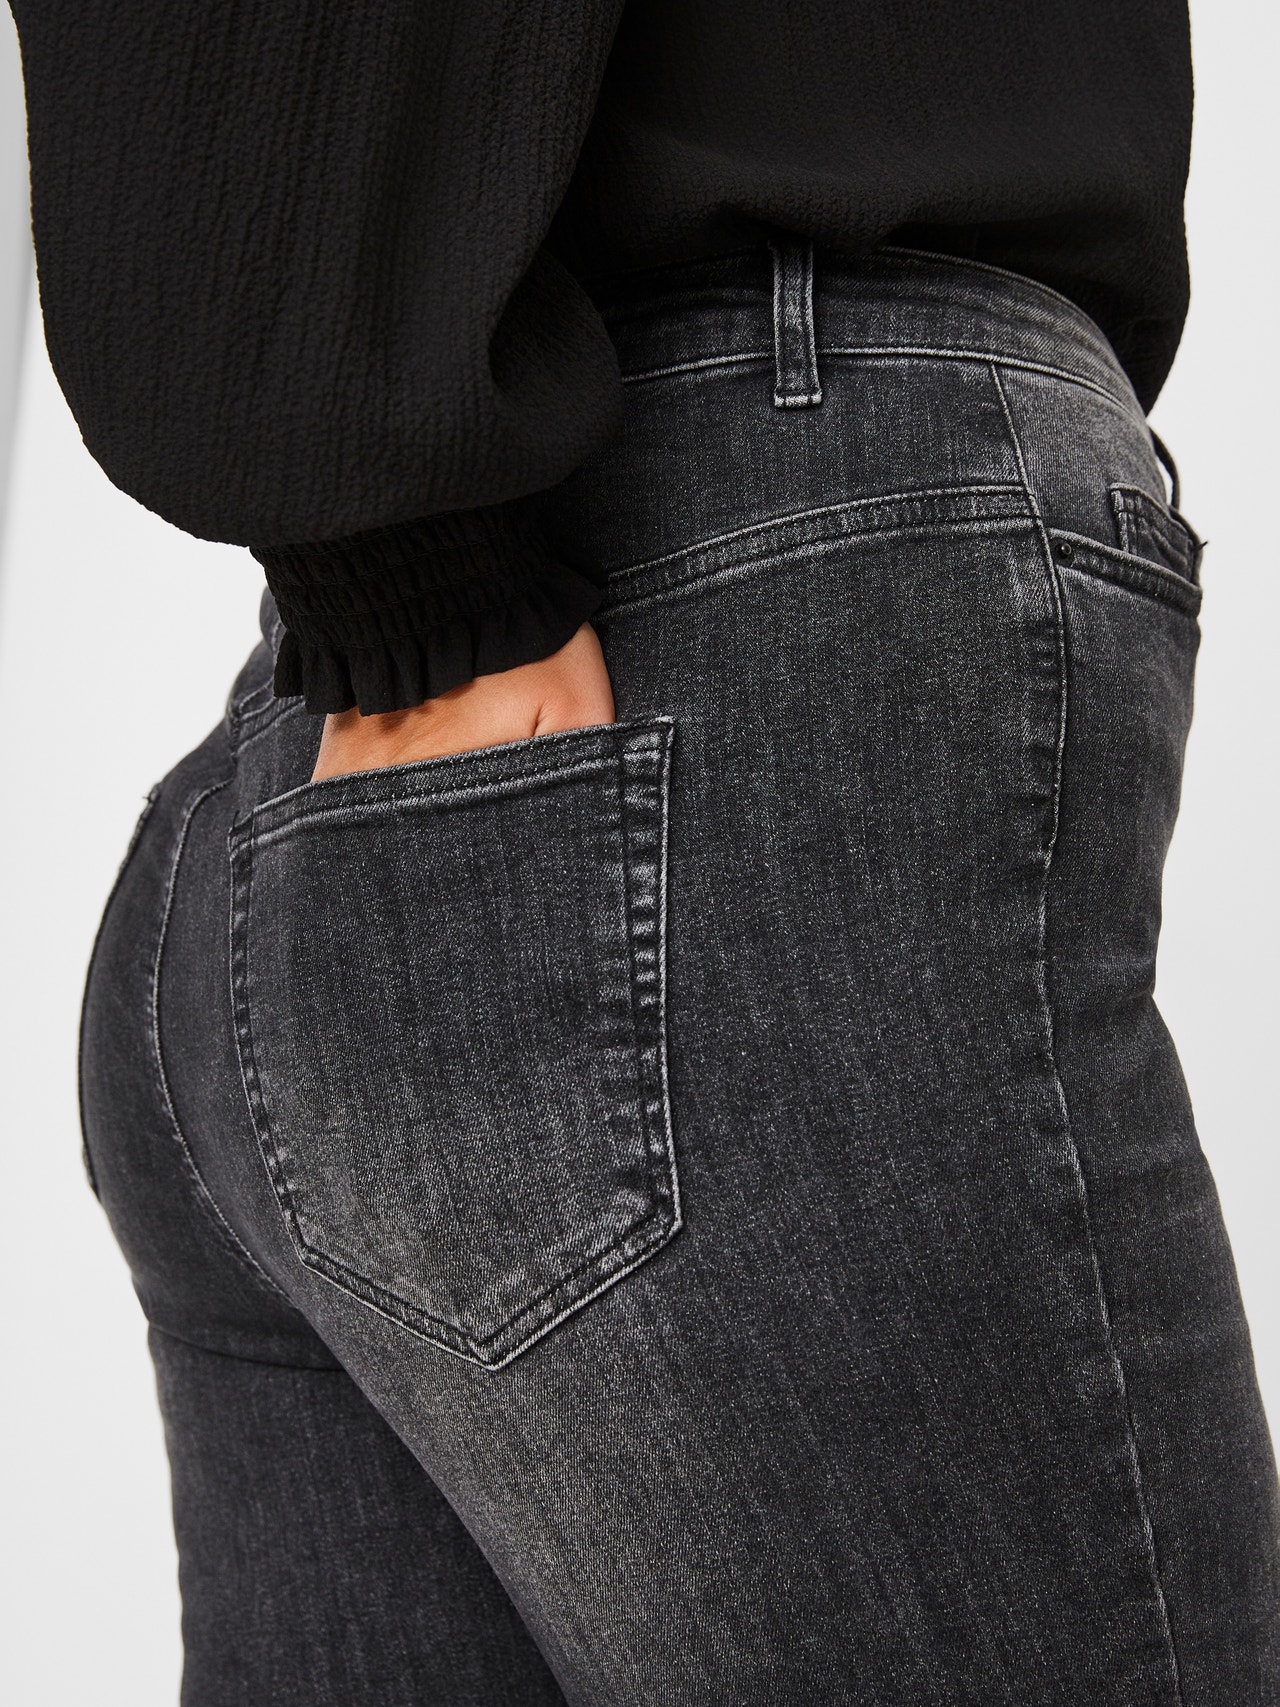 Vero Moda VMLORA Vita alta Skinny Fit Jeans -Black Denim - 10237623